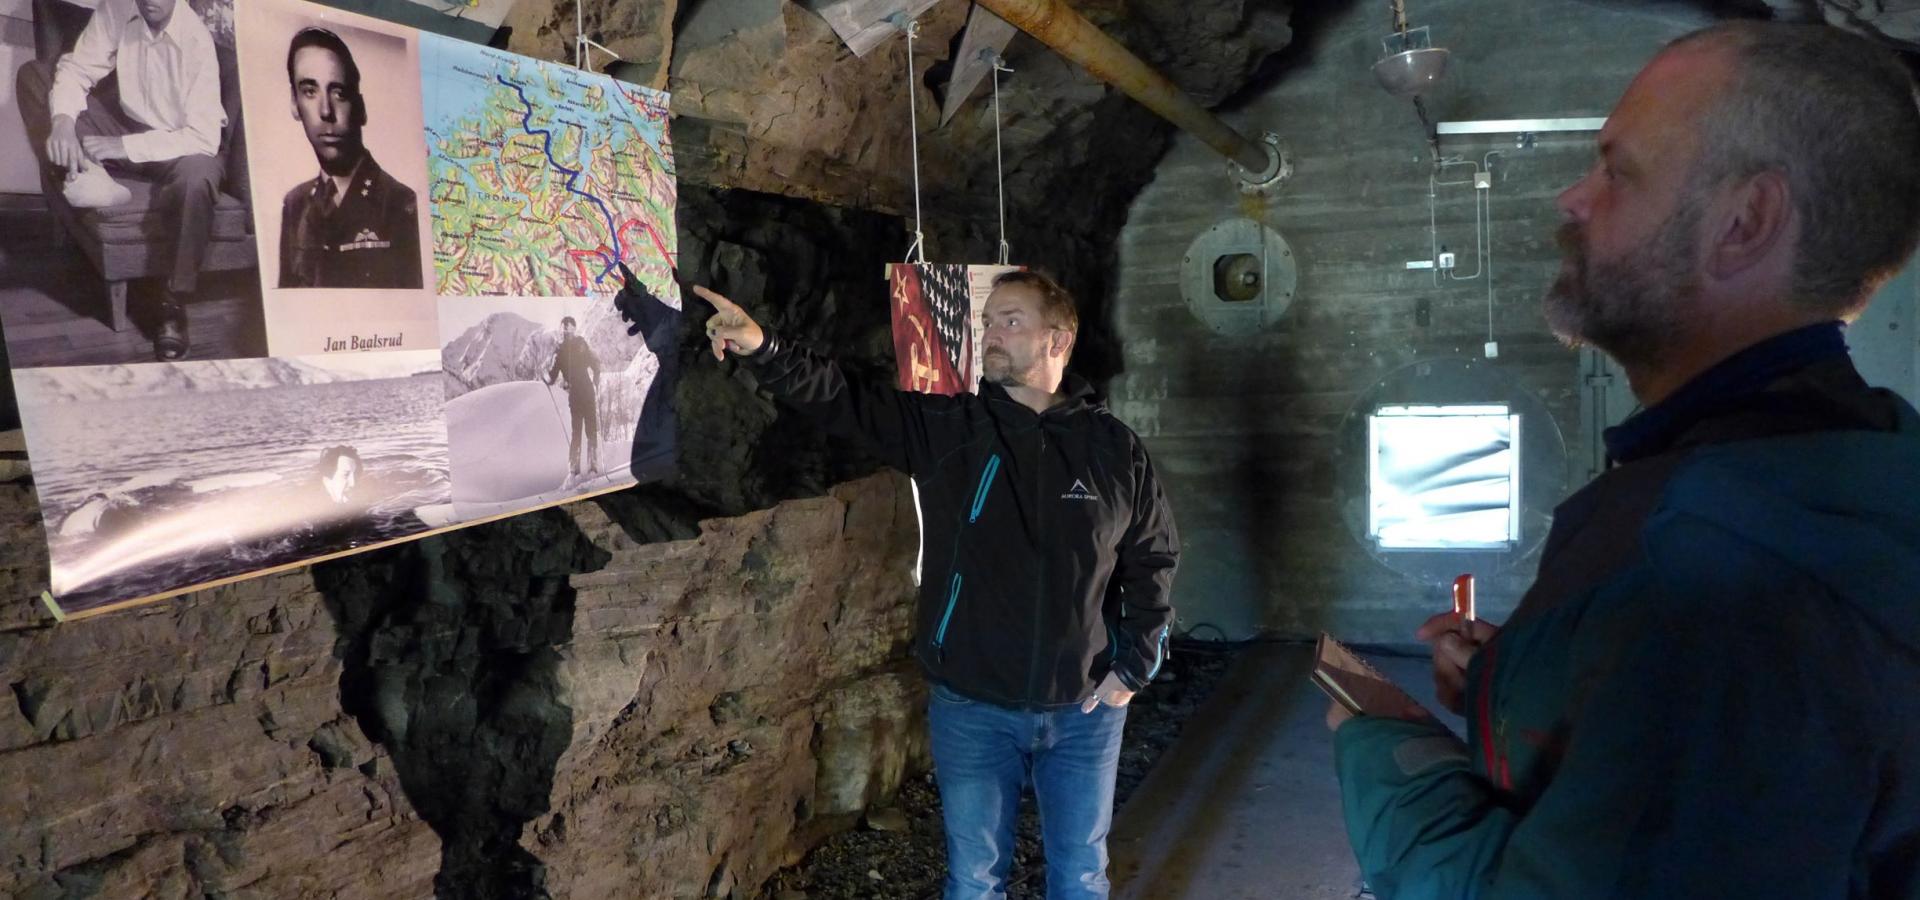 En guide forteller om utstillingen til en besøkende, de er inne i en bunkers